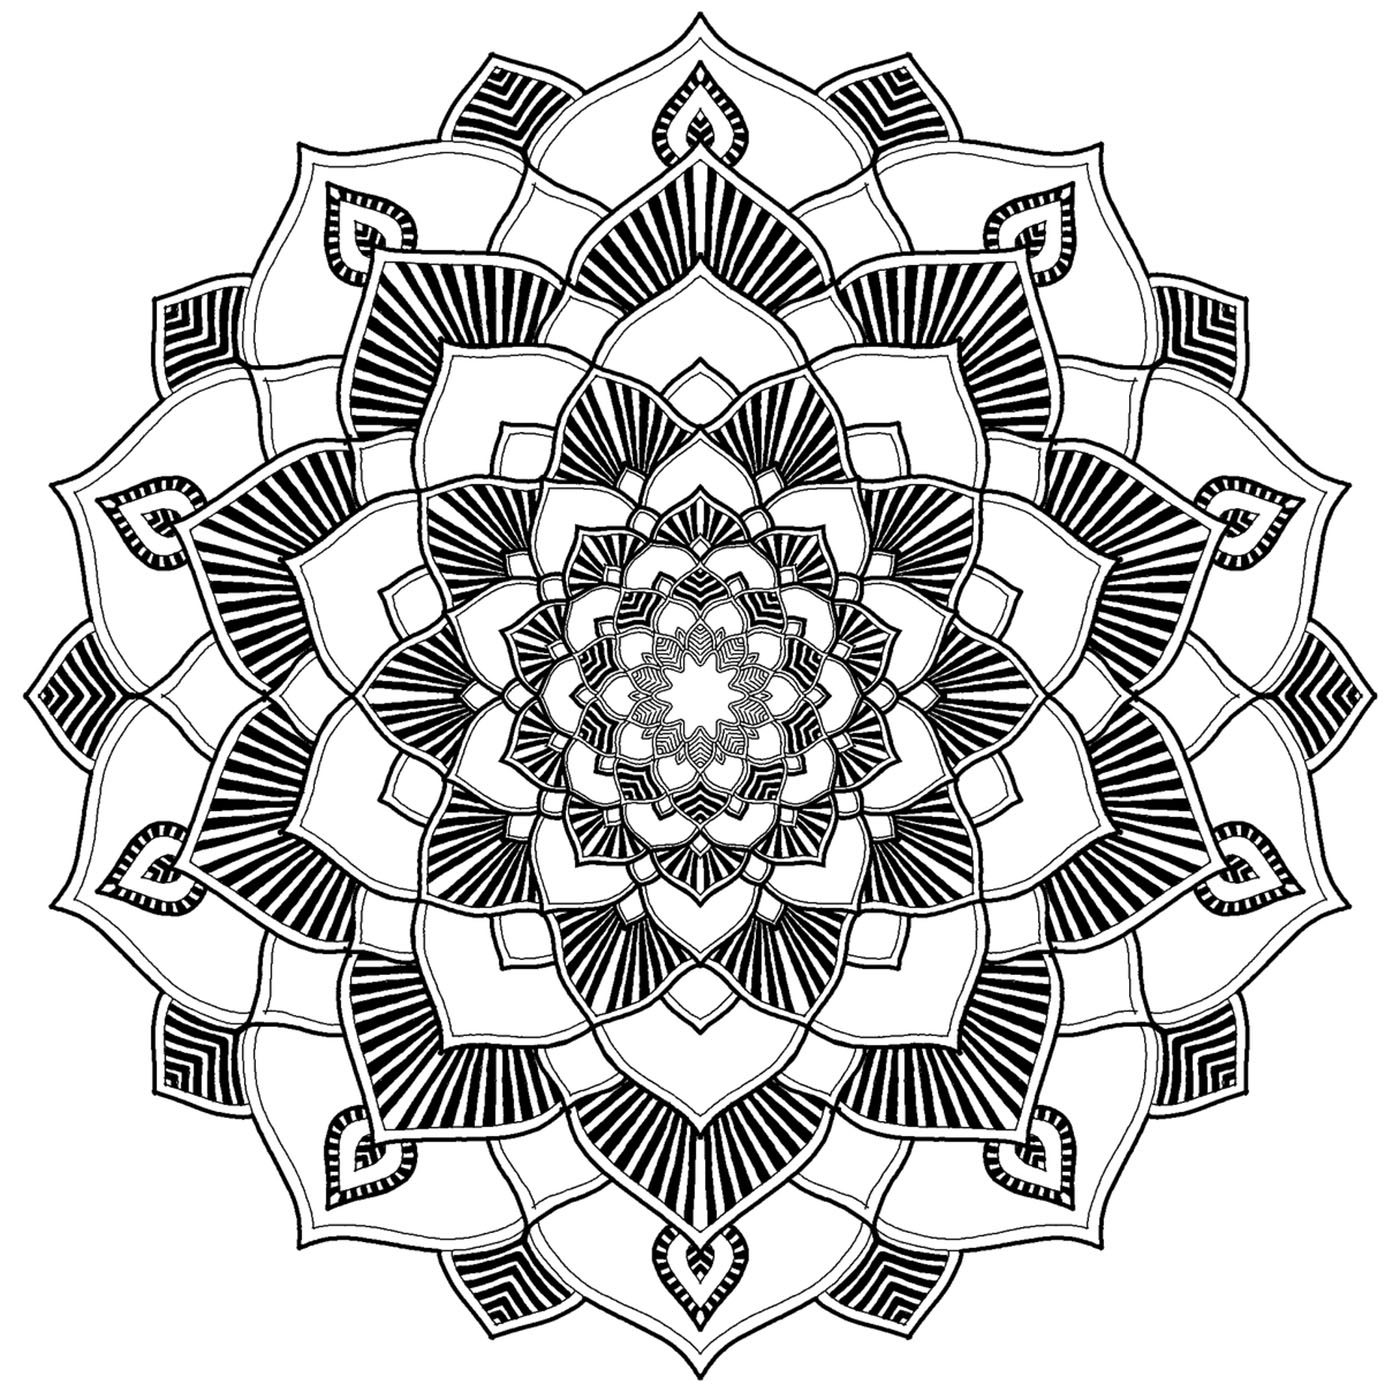 Wunderschönes Mandala, perfekt zum Entspannen und um Freude daran zu haben, wiederholte und wunderschön gezeichnete Muster in Farbe zu bringen.